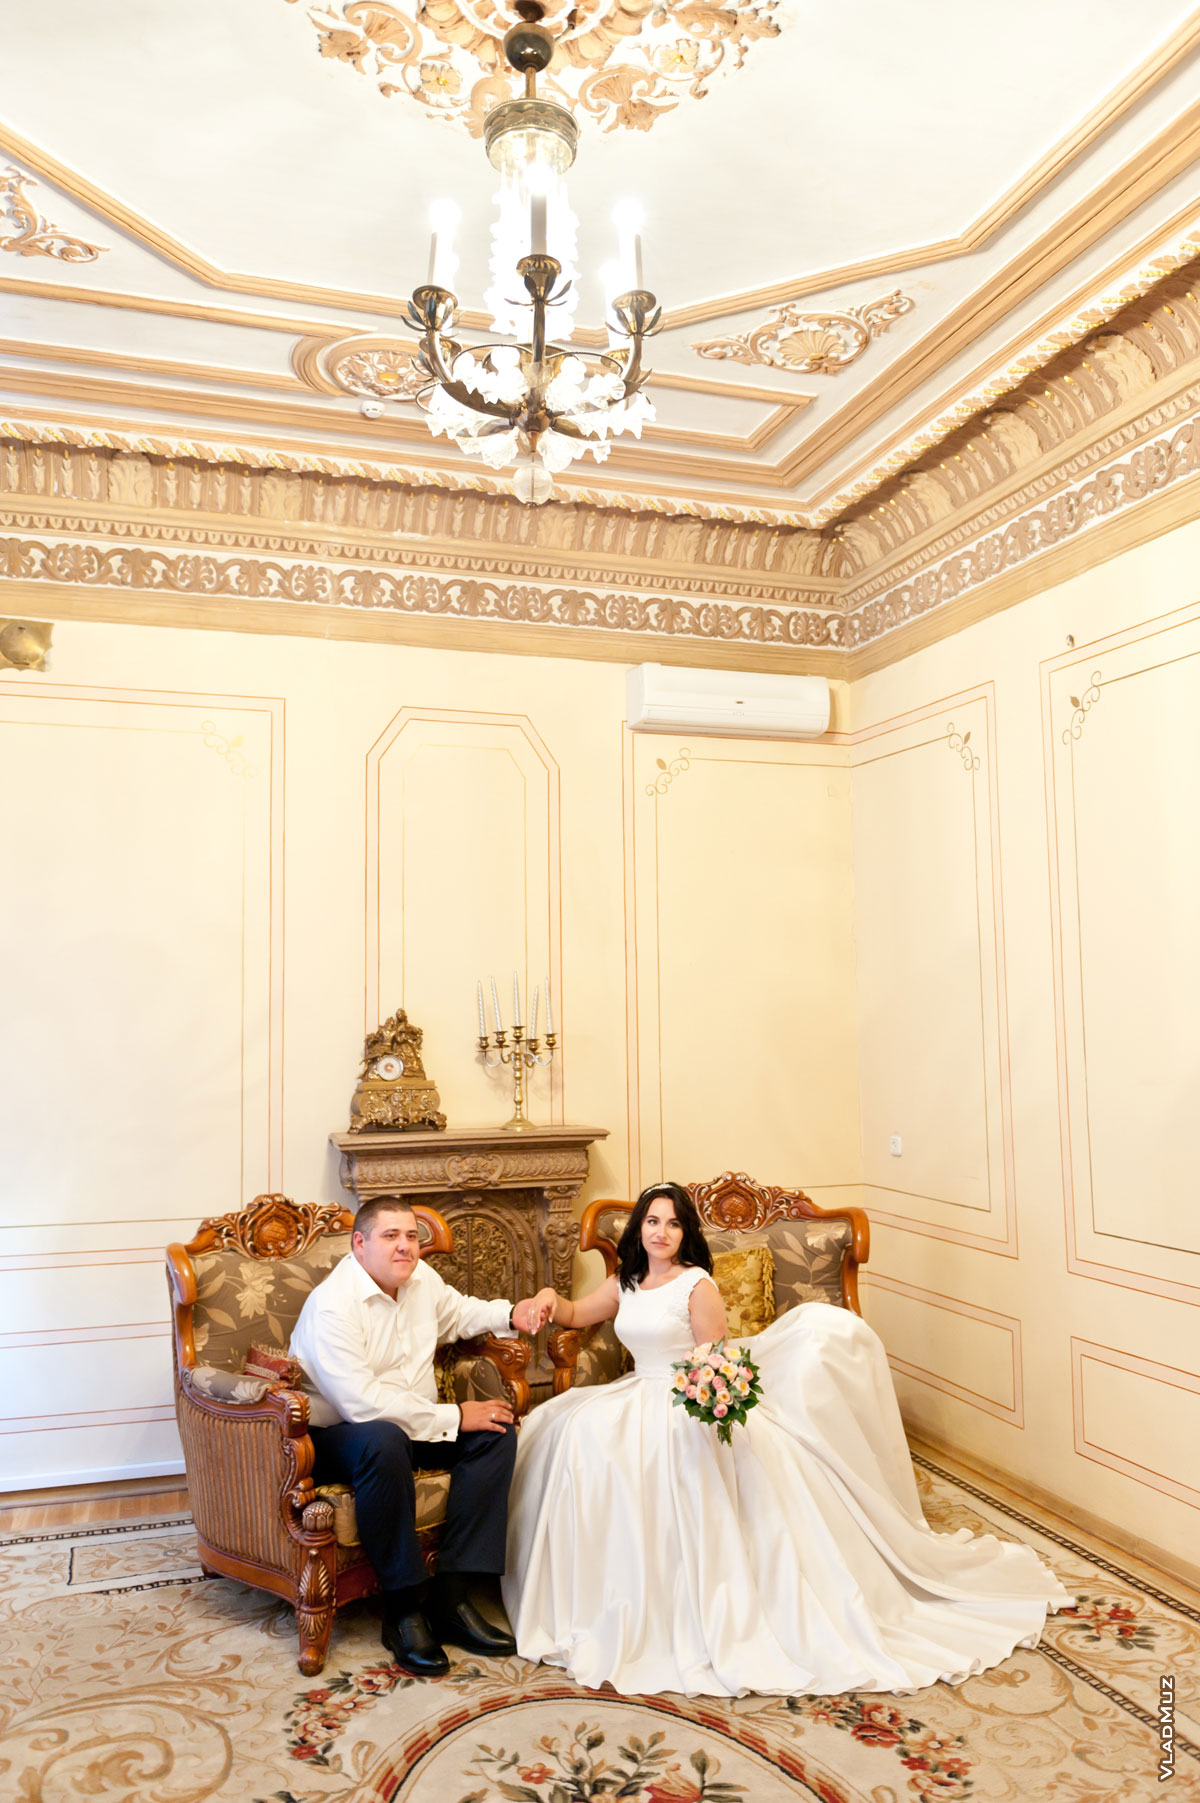 ЗАГС в Новочеркасске на Московской: фото молодоженов в интерьерах Дворца бракосочетаний